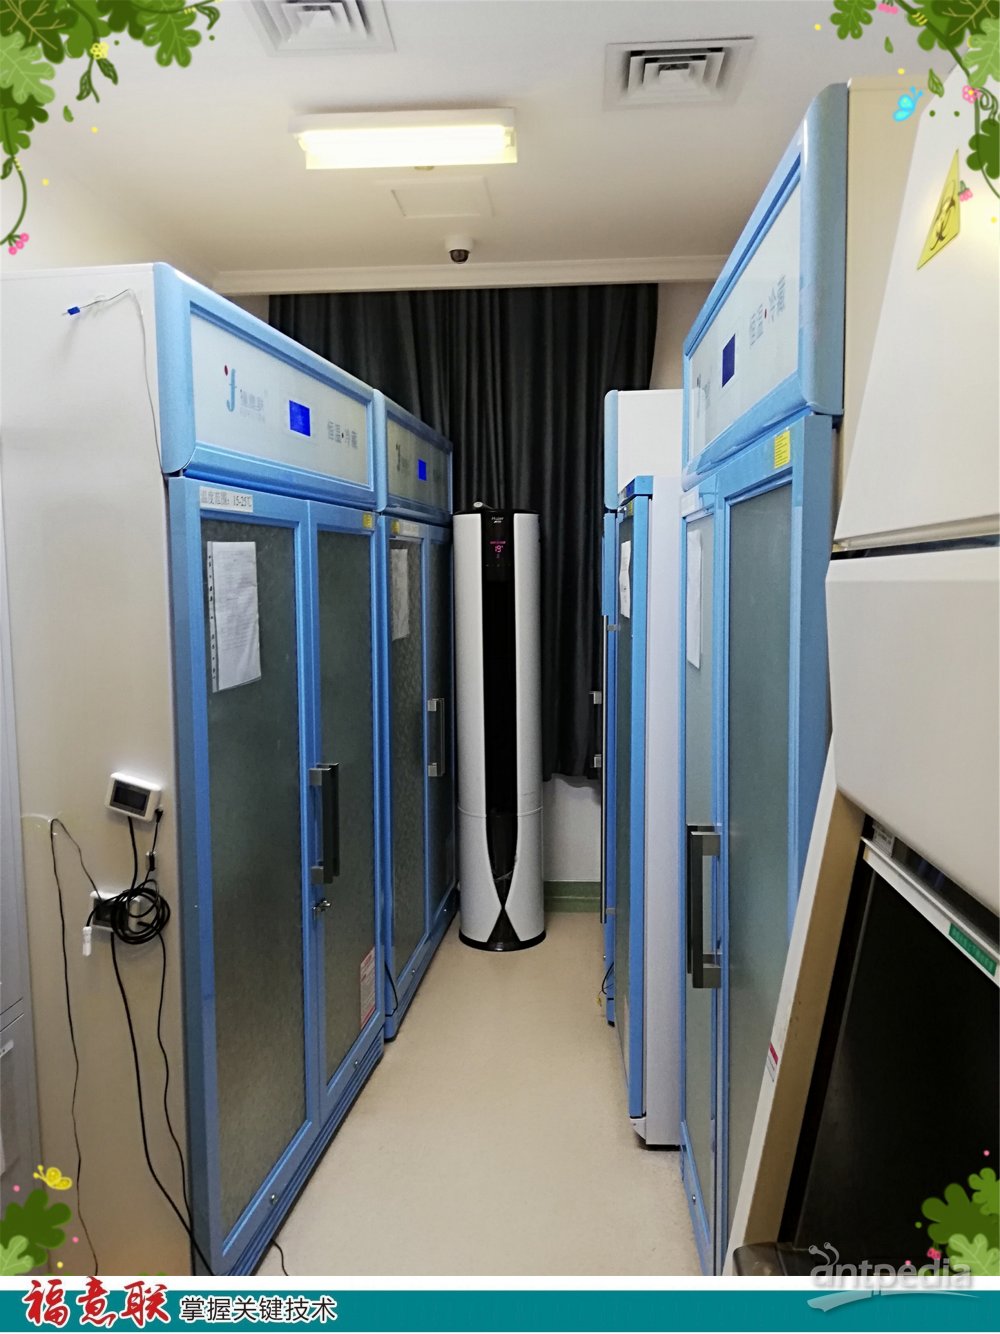 科研实验室用蛋白纯化仪实验室冰箱 0-100℃层析柜 福意联